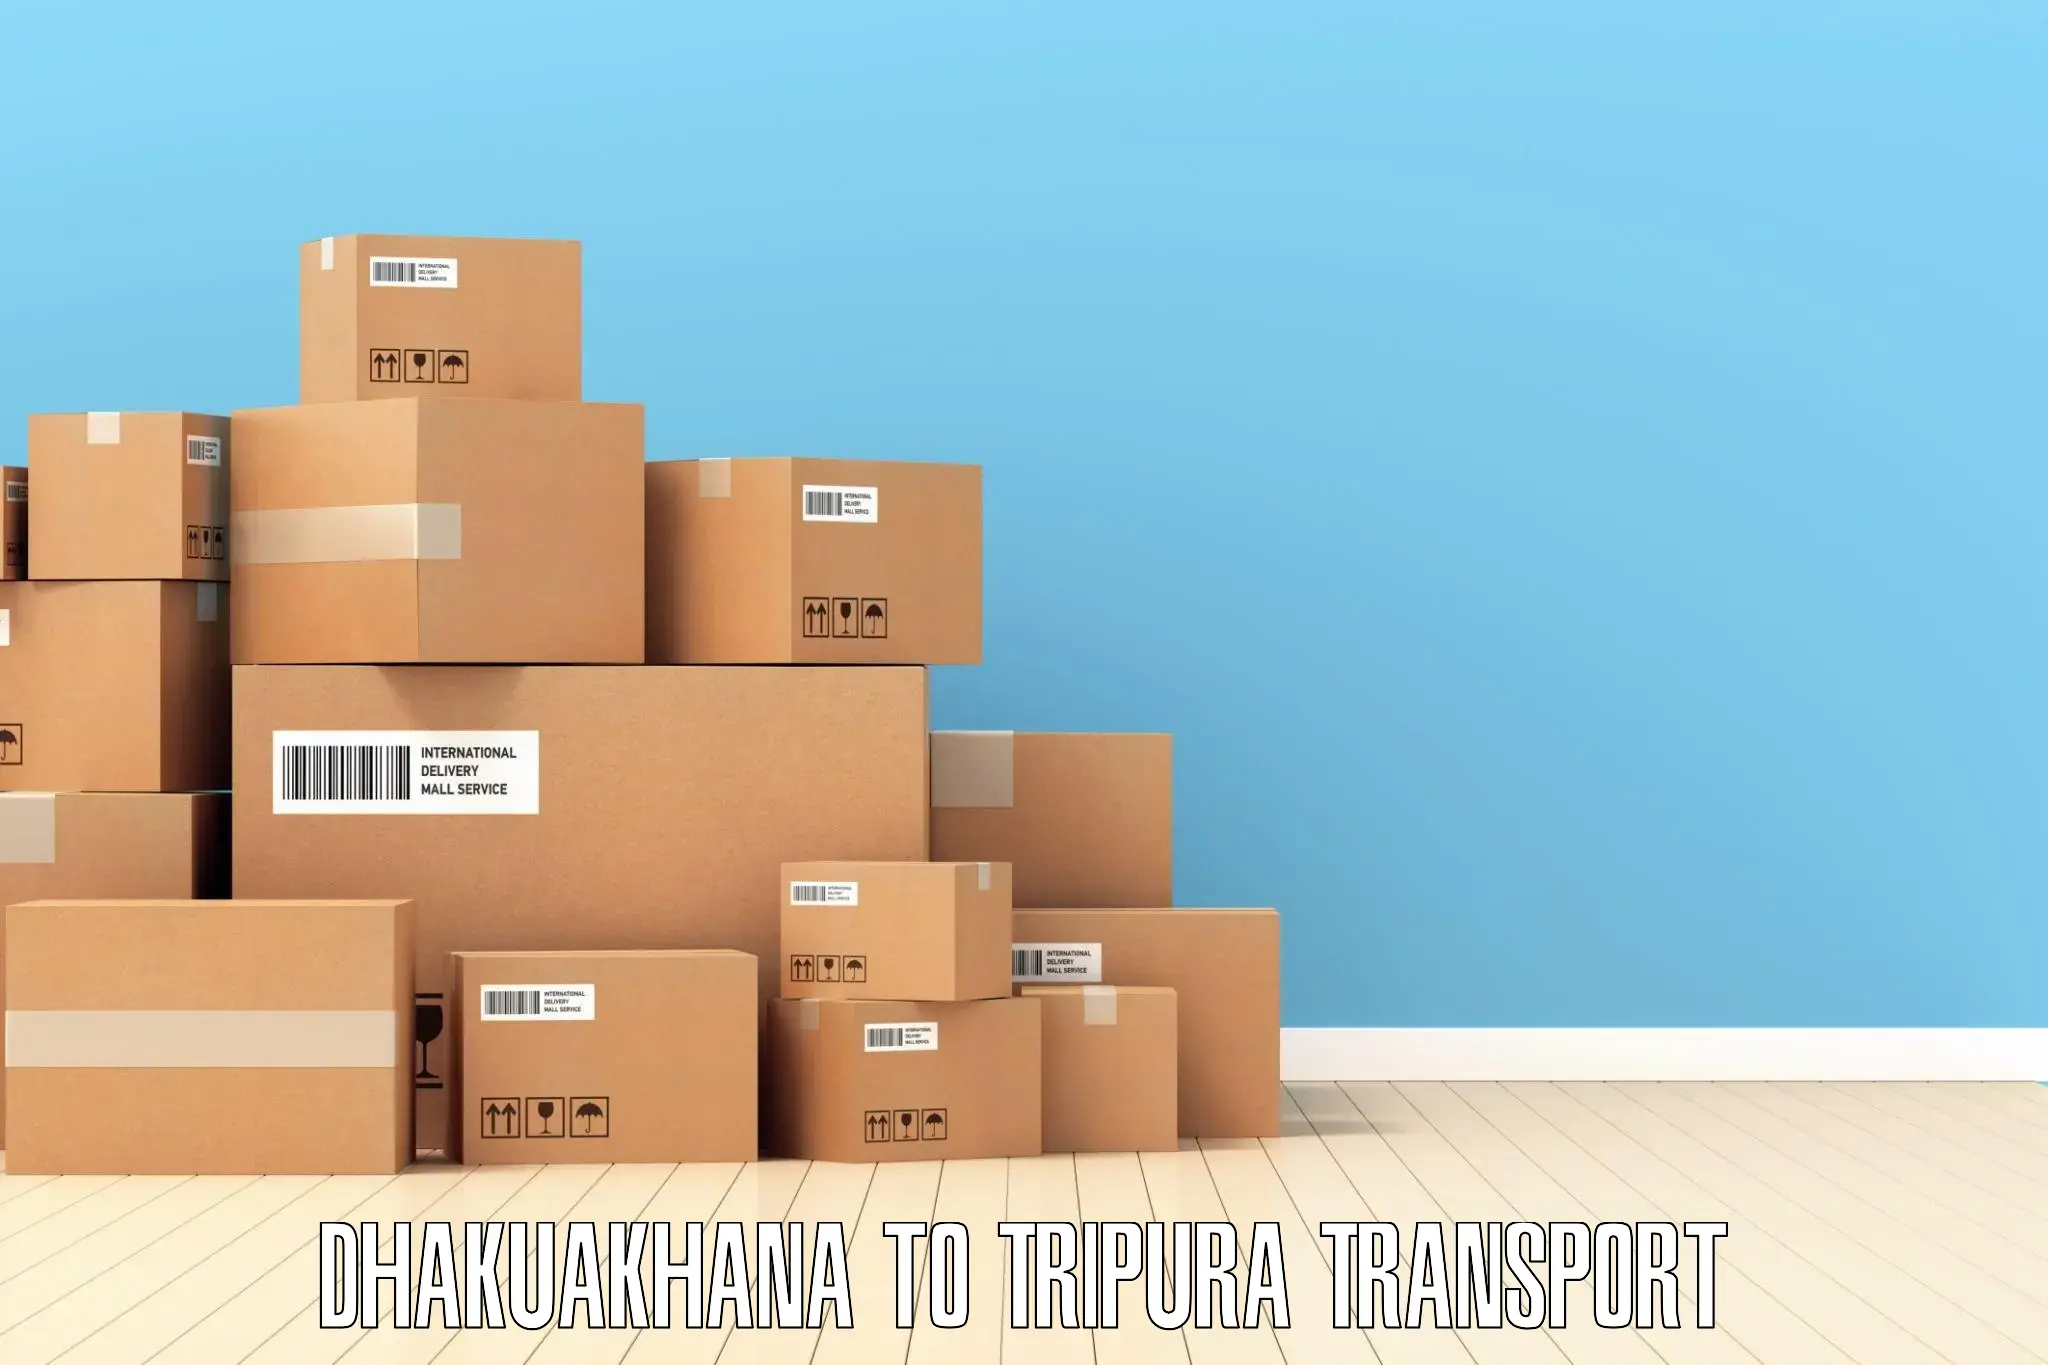 Vehicle transport services Dhakuakhana to IIIT Agartala